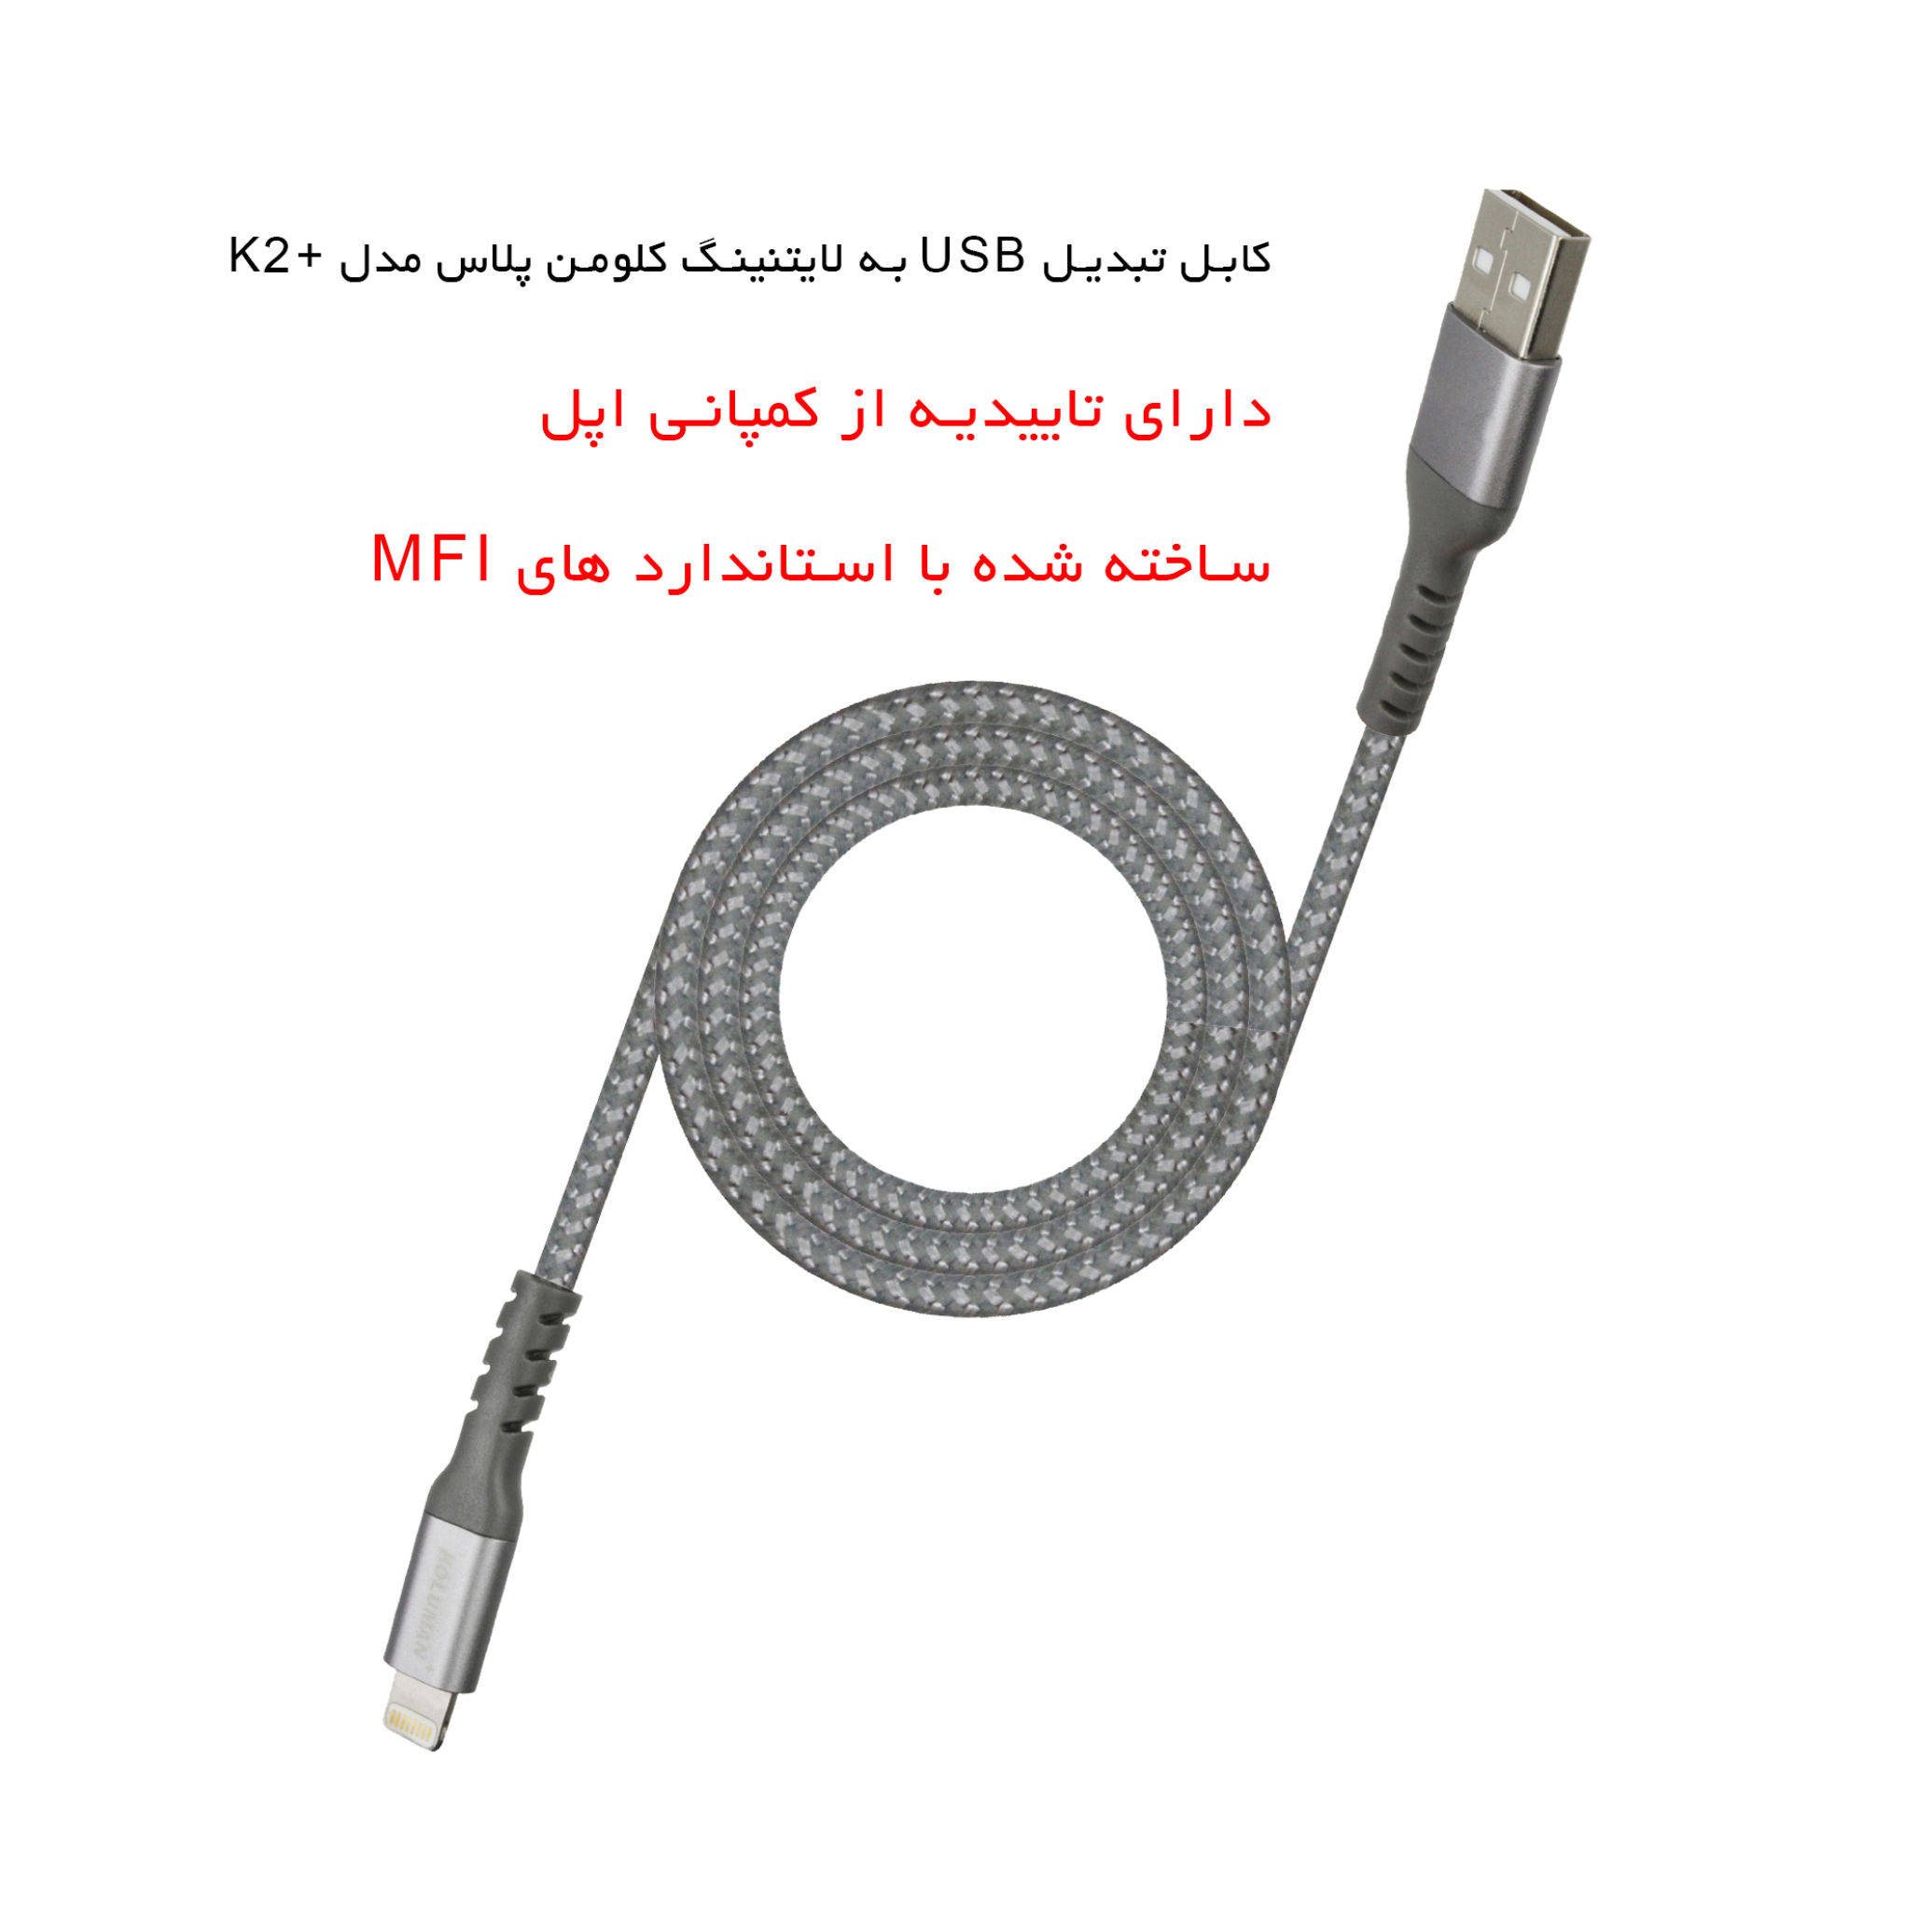 کابل تبدیل USB به لایتنینگ کلومن پلاس مدل +K2 طول 2 متر به همراه ...